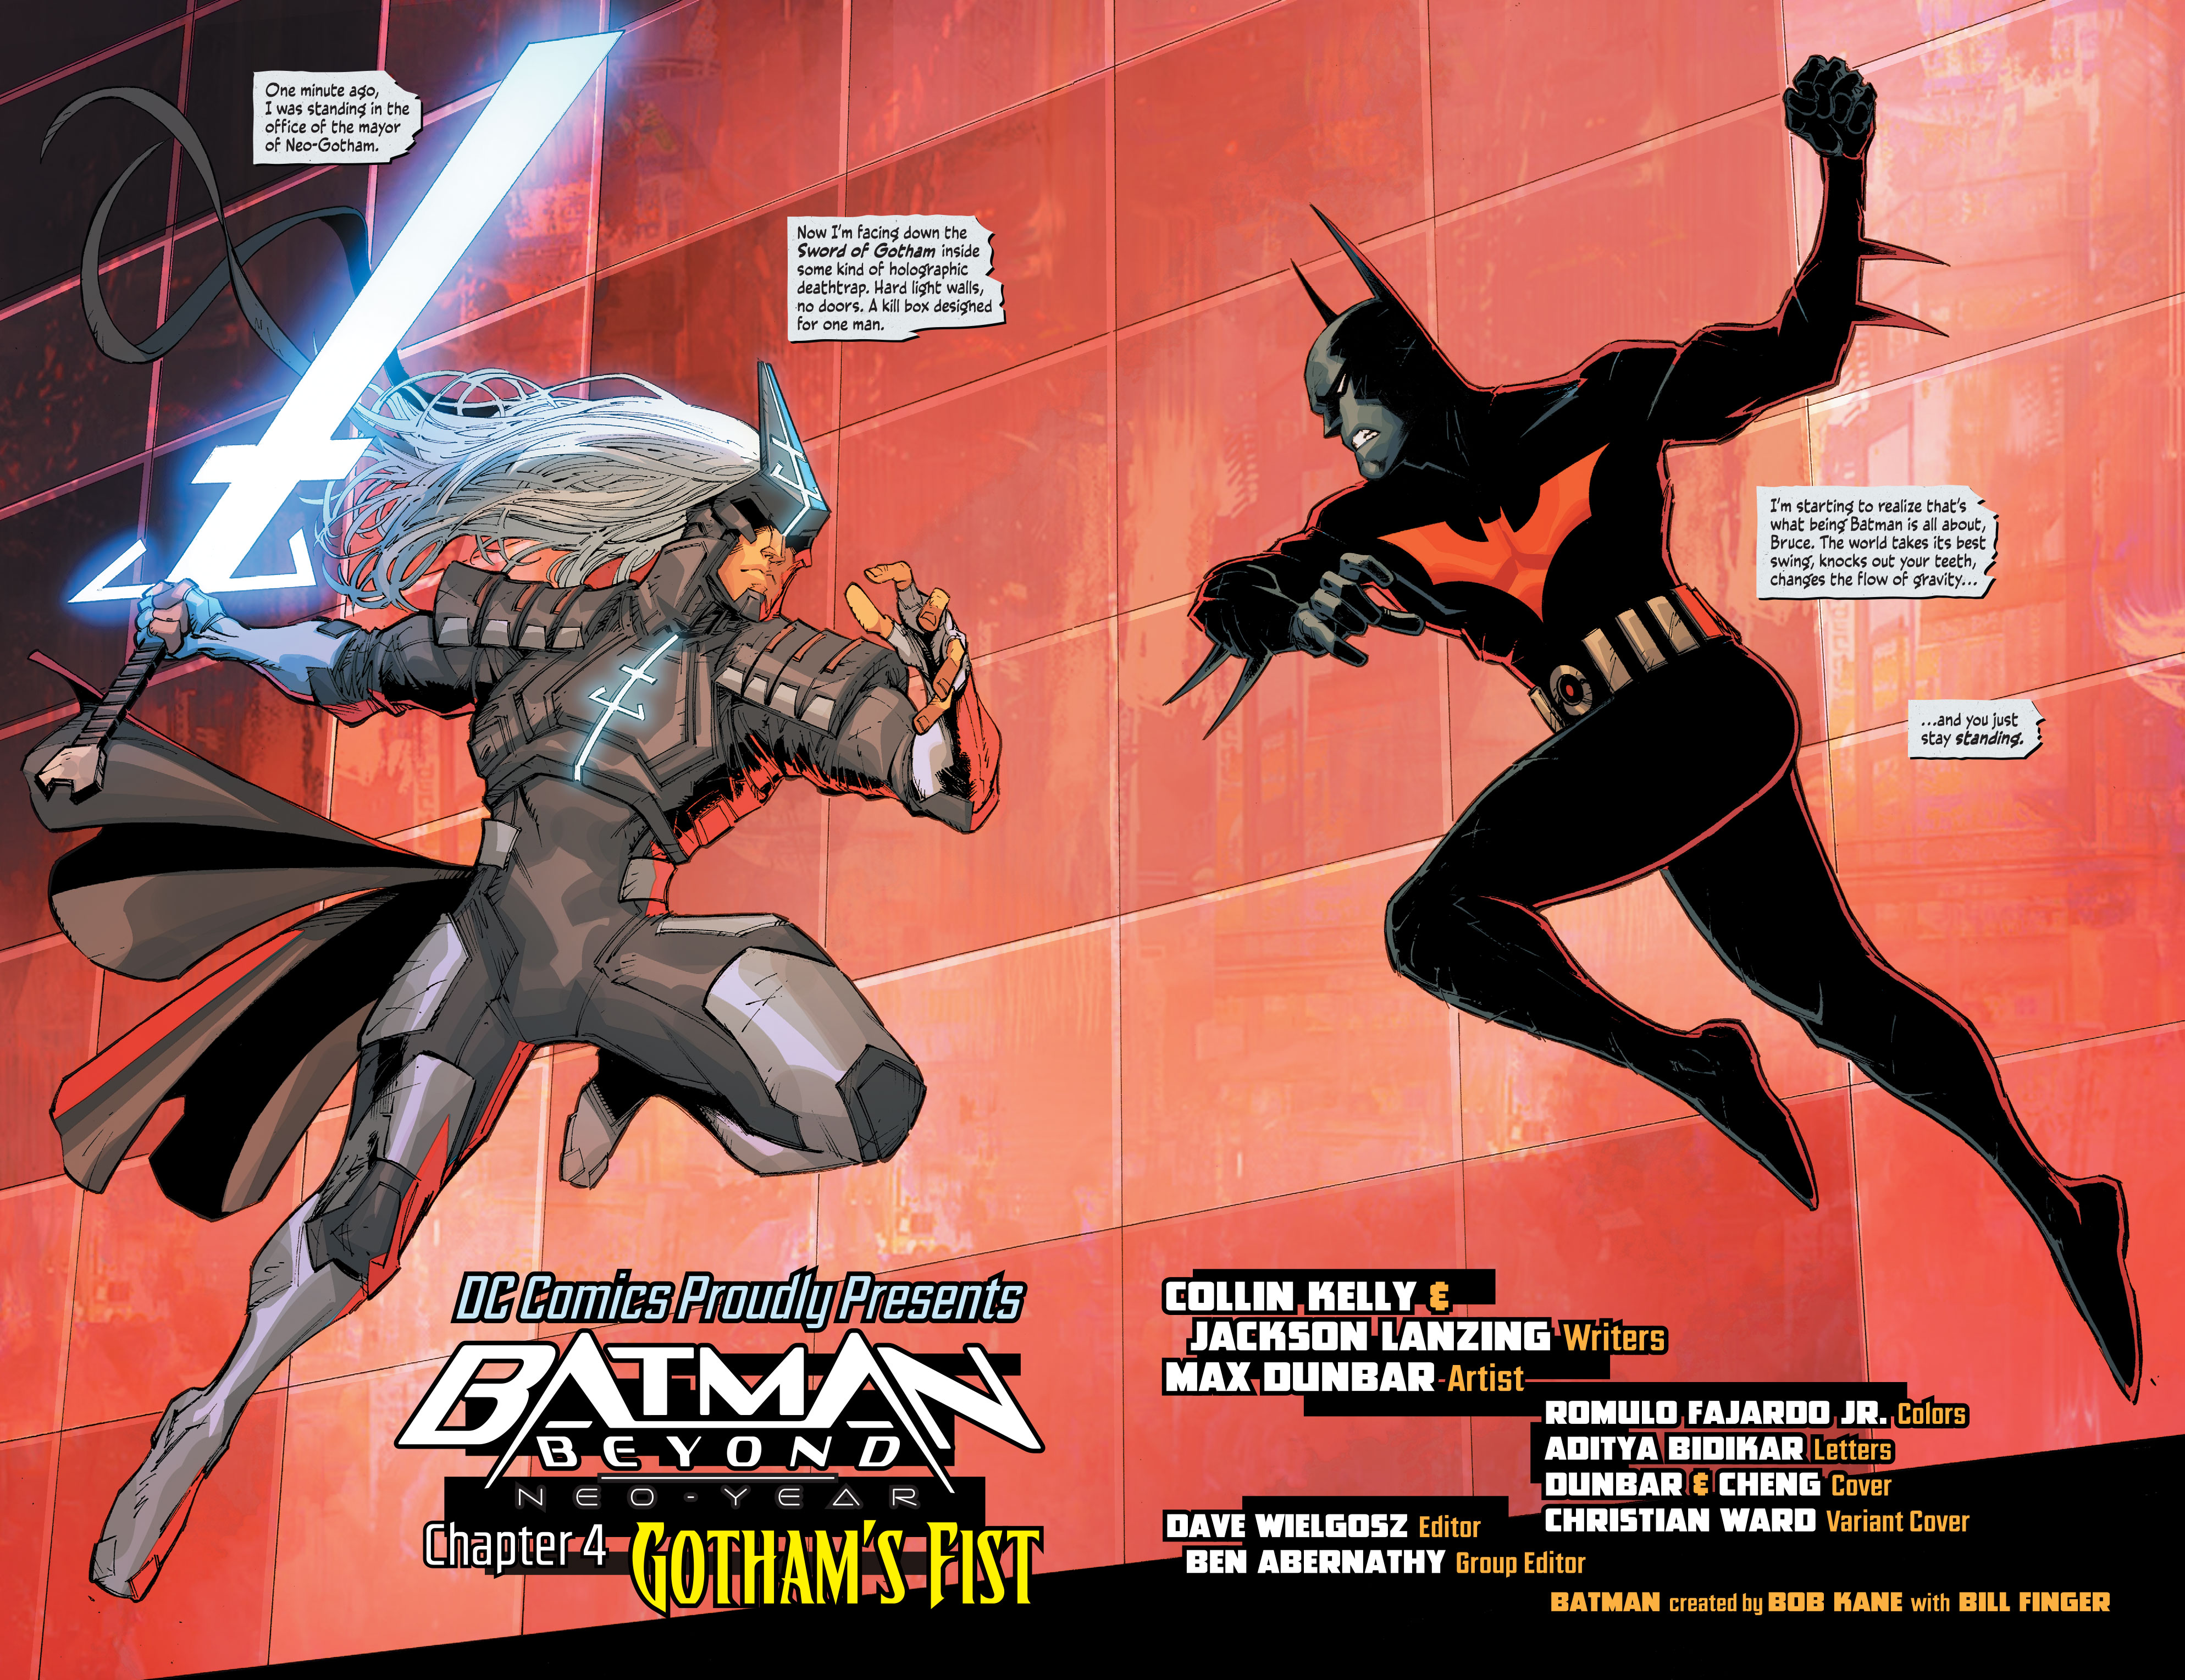 Weird Science DC Comics: Batman Beyond: Neo-Year #4 Review